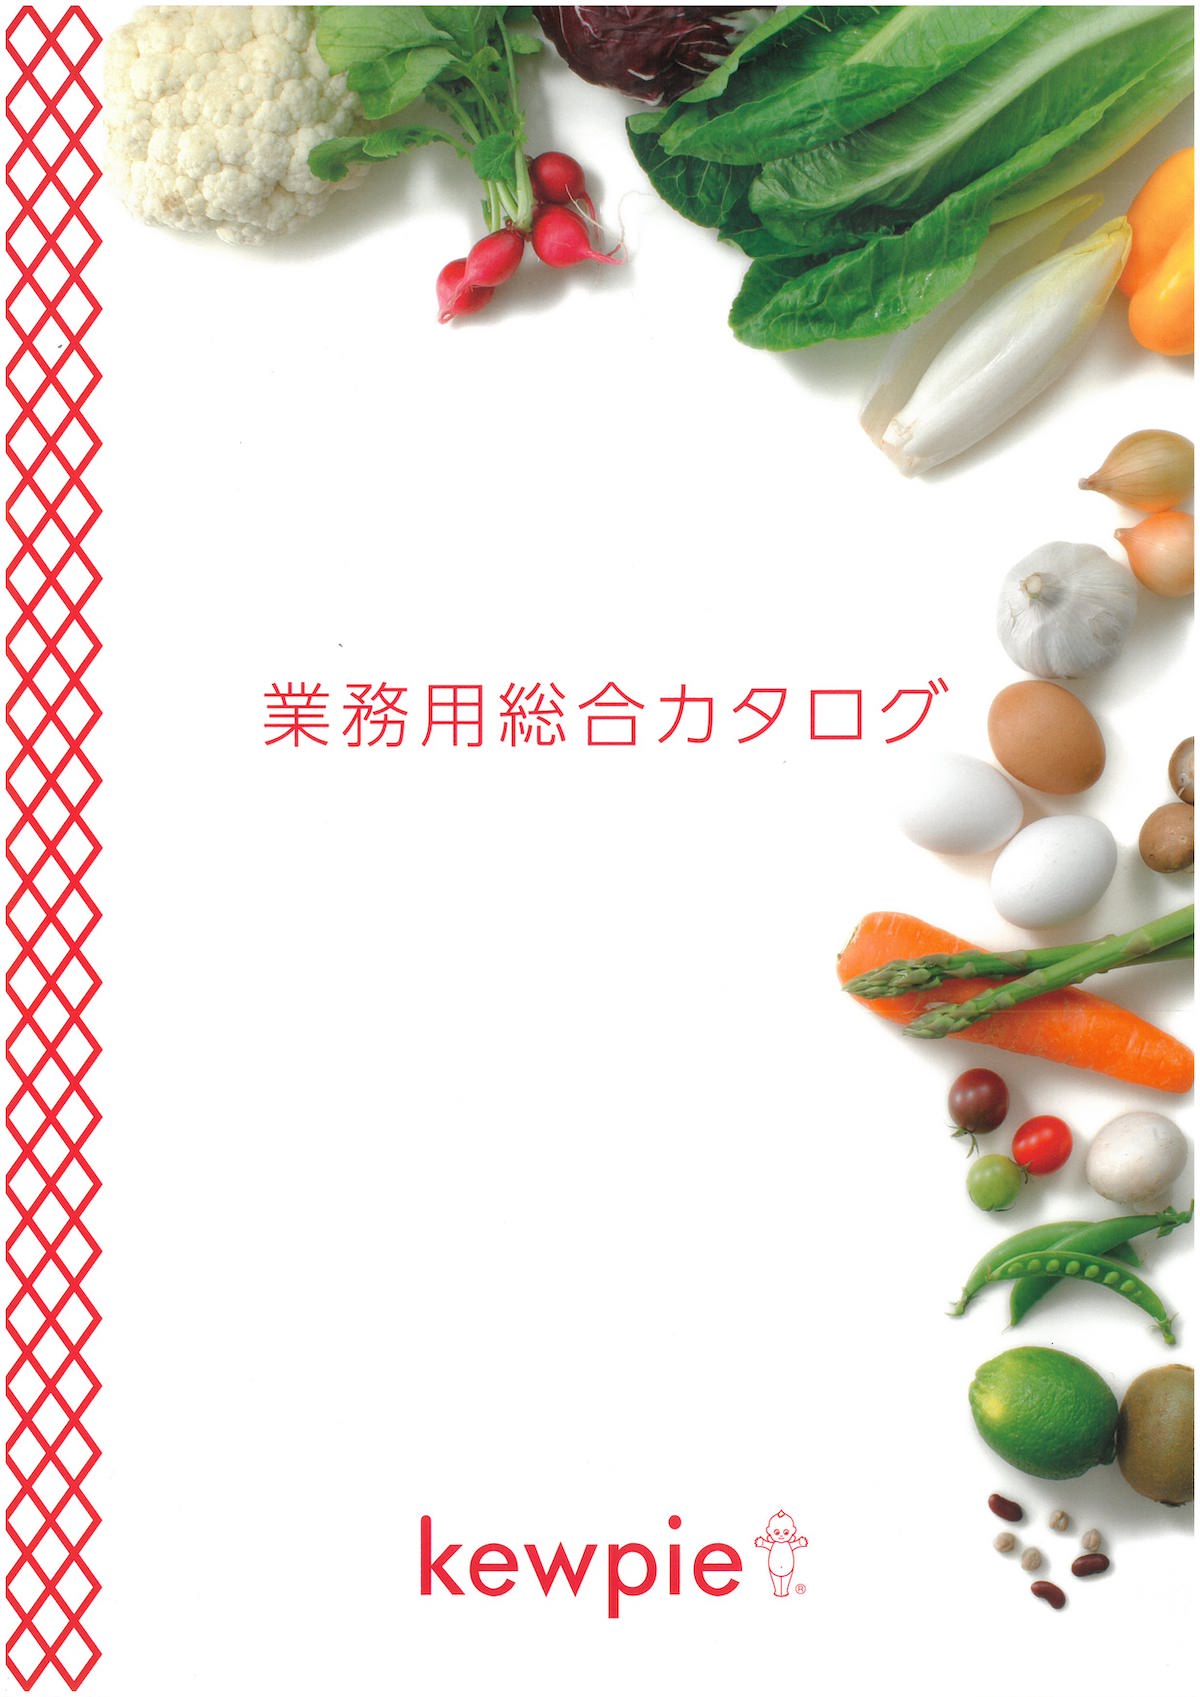 キューピー業務用総合カタログ2021 kewpie | 冷凍食品カタログ.com